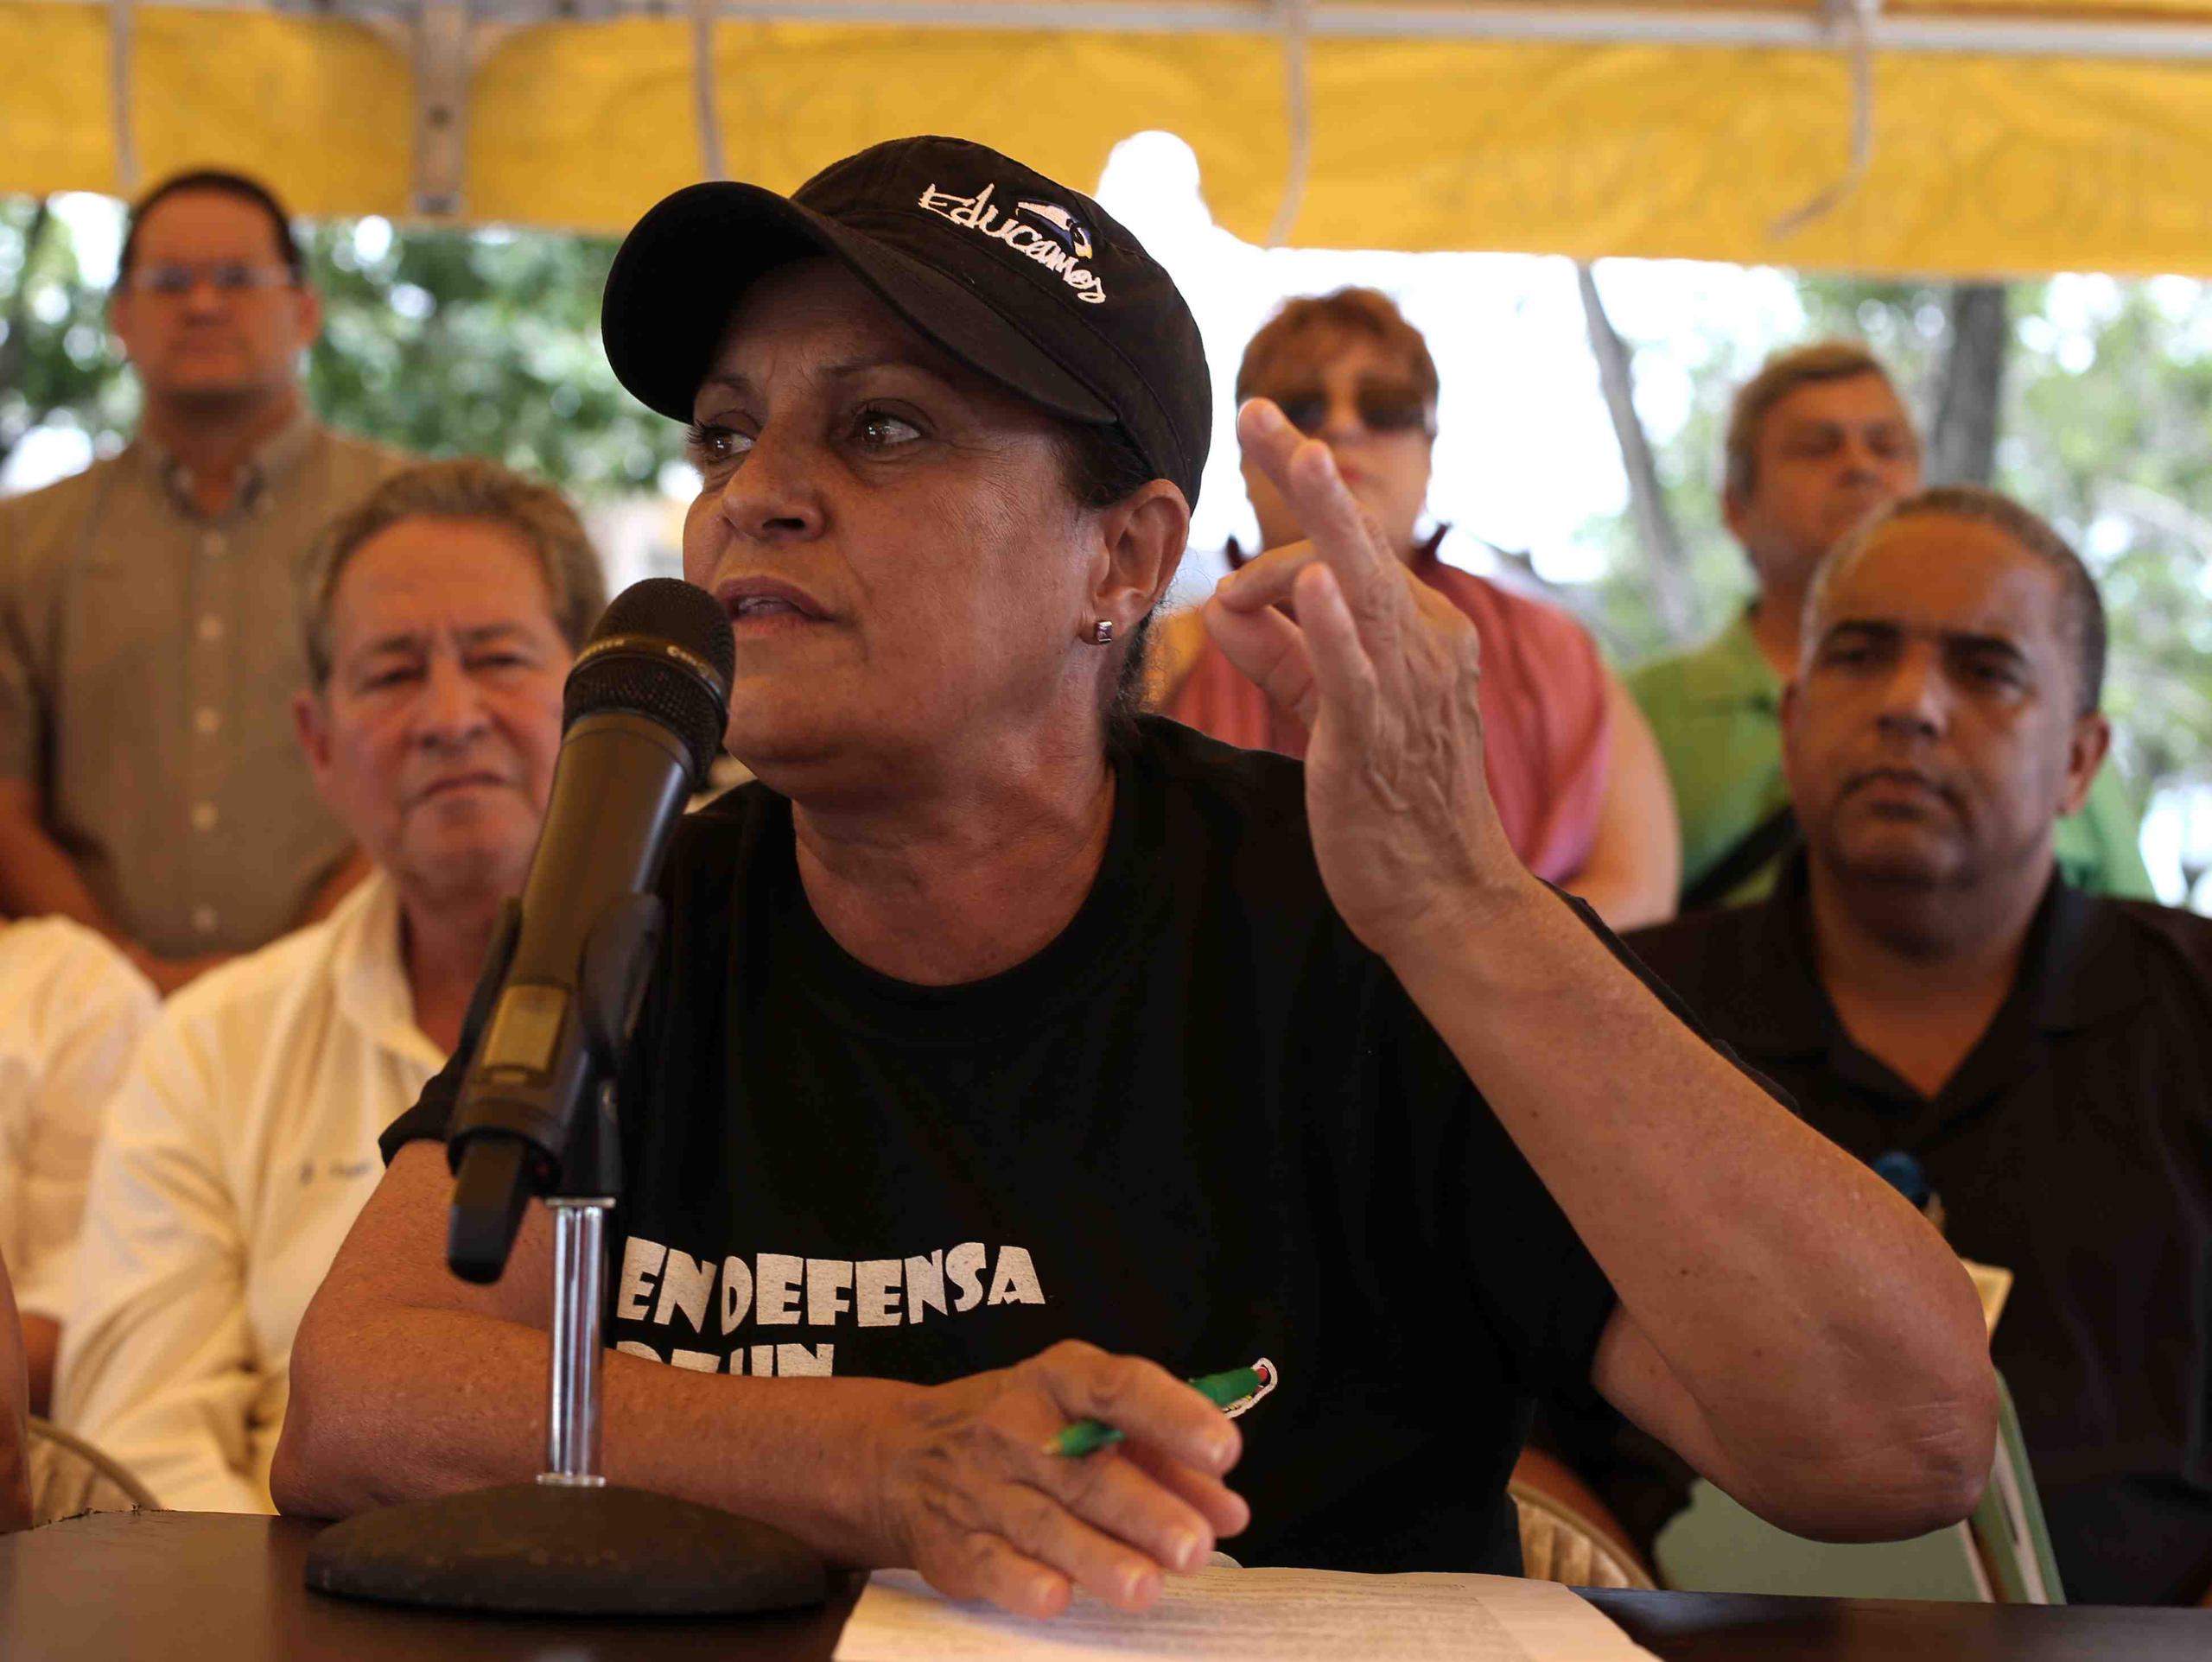 “Si el gobierno ha priorizado en pagarles a los bonistas, los trabajadores no estamos dispuestos a dar ni un centavo más”, expresó la líder magisterial Eva Ayala. (GFR Media)